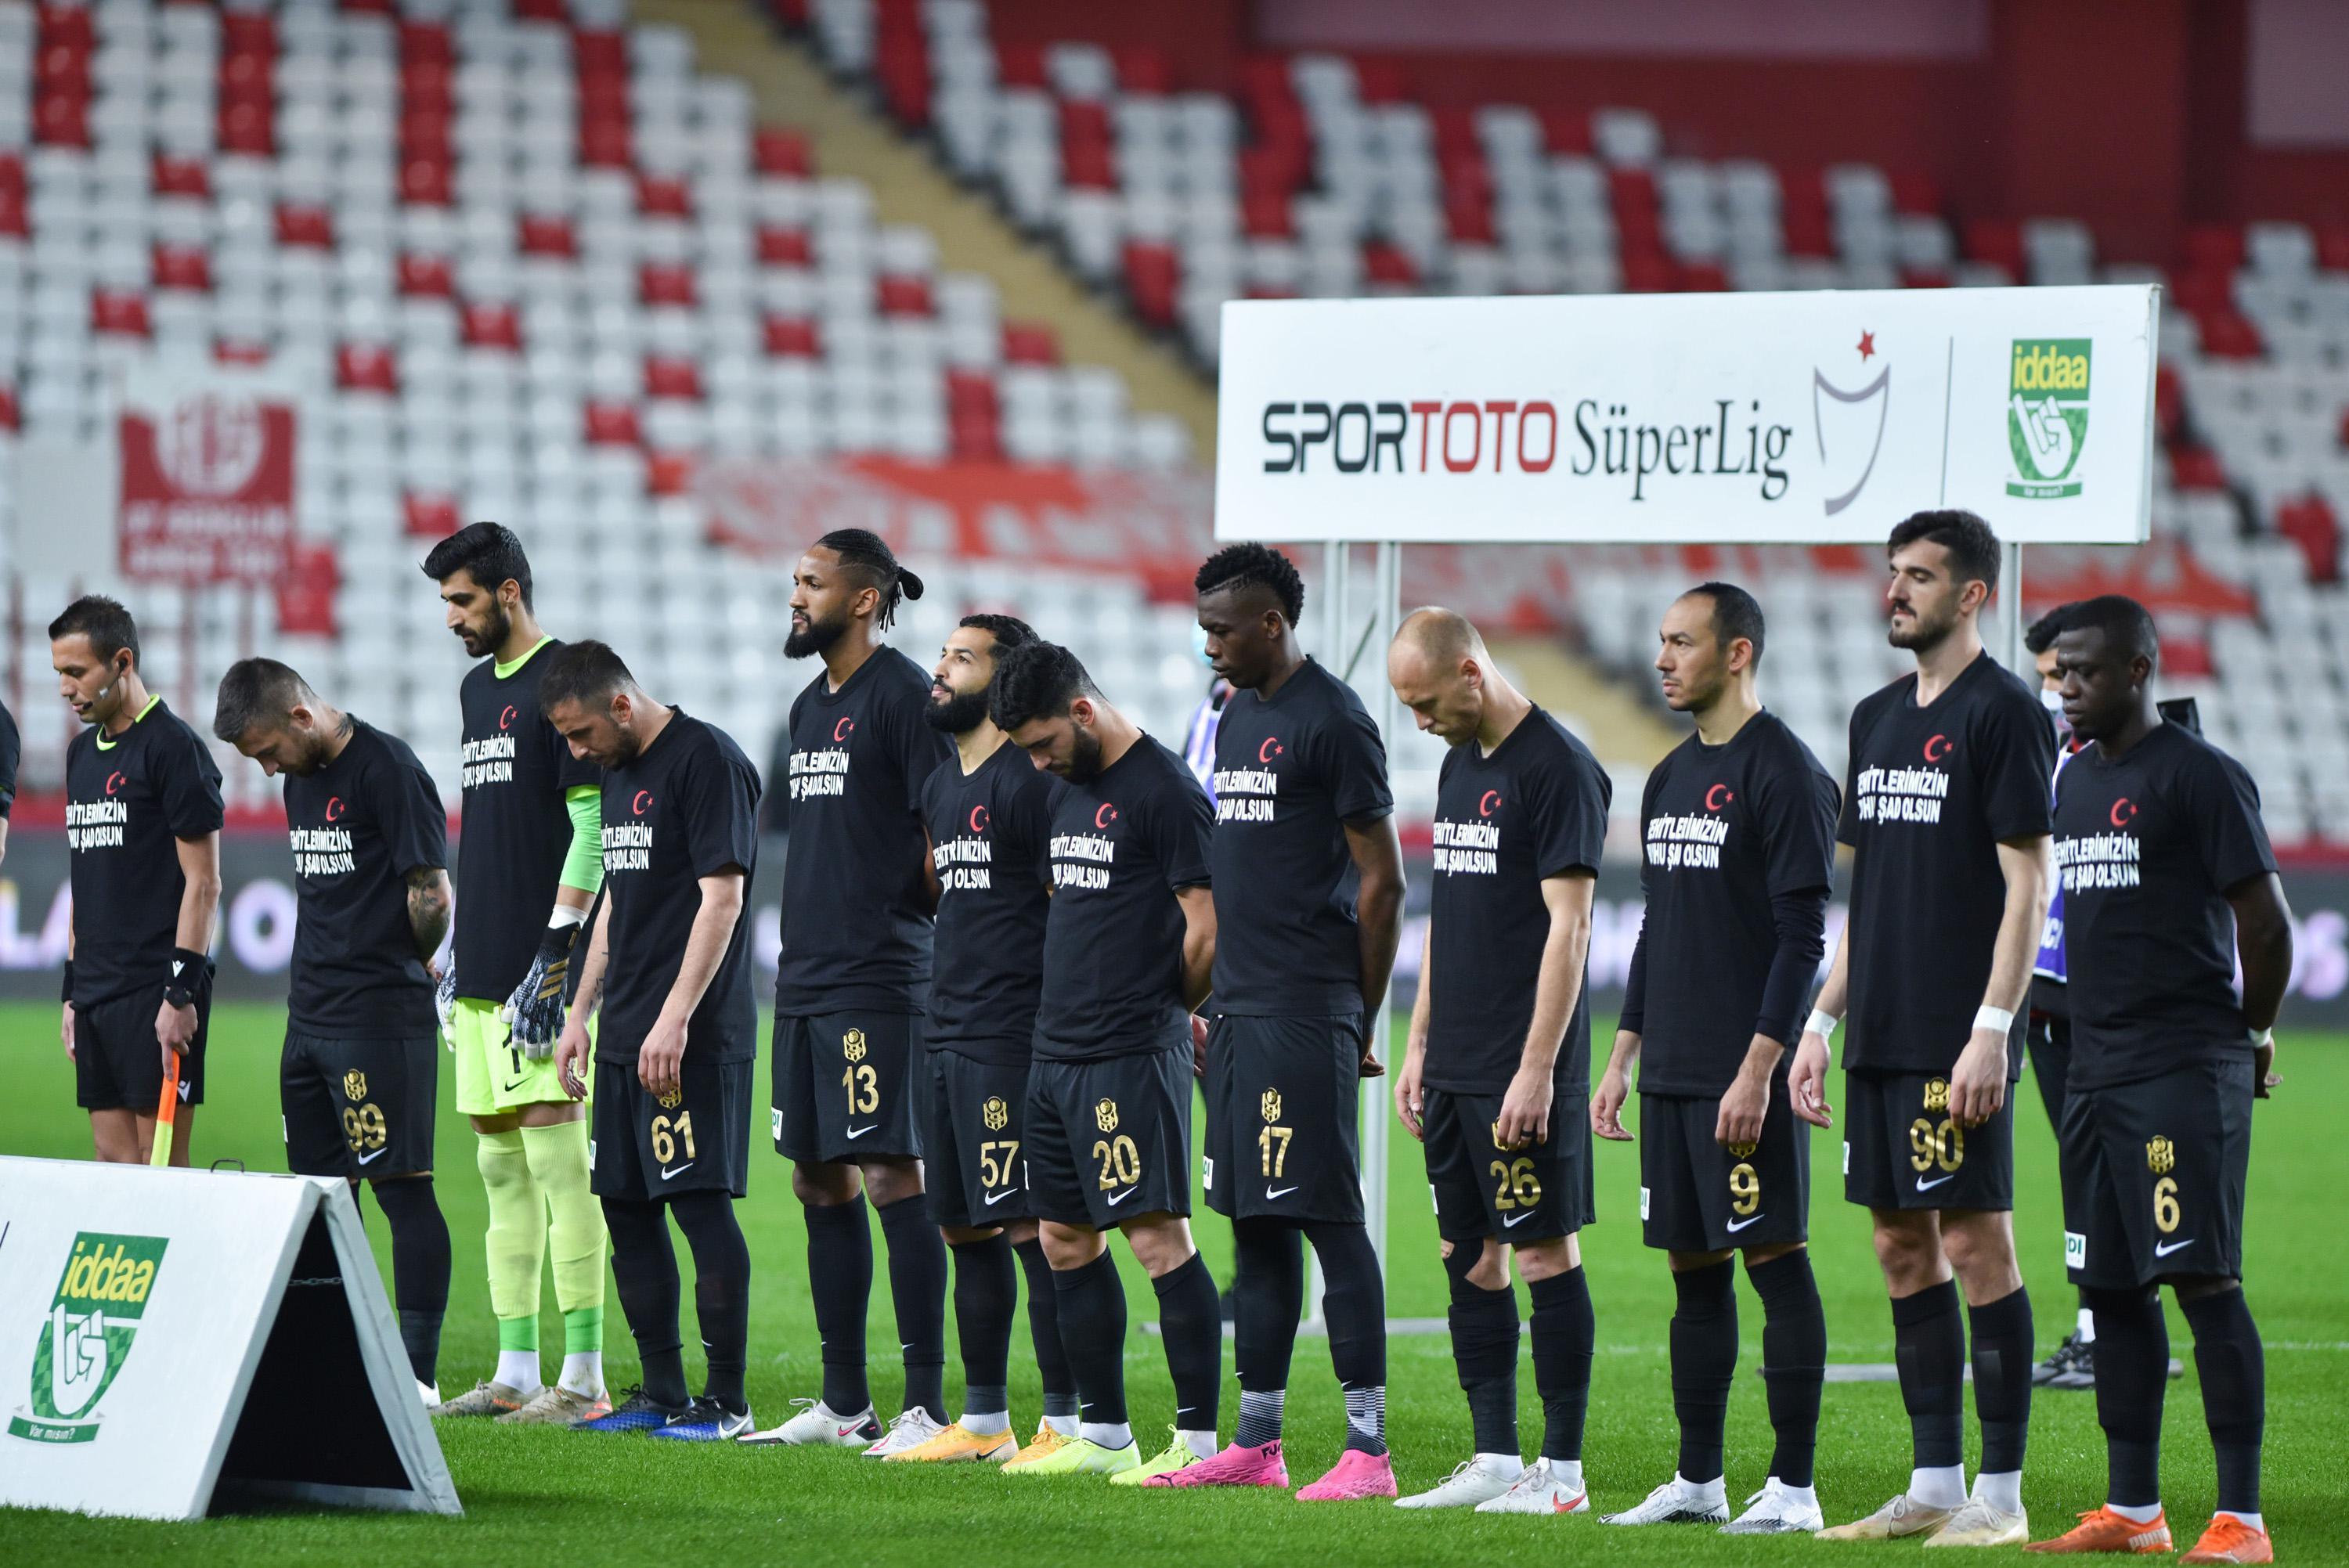 (ÖZET) Antalyaspor - Yeni Malatyaspor maç sonucu: 1-1